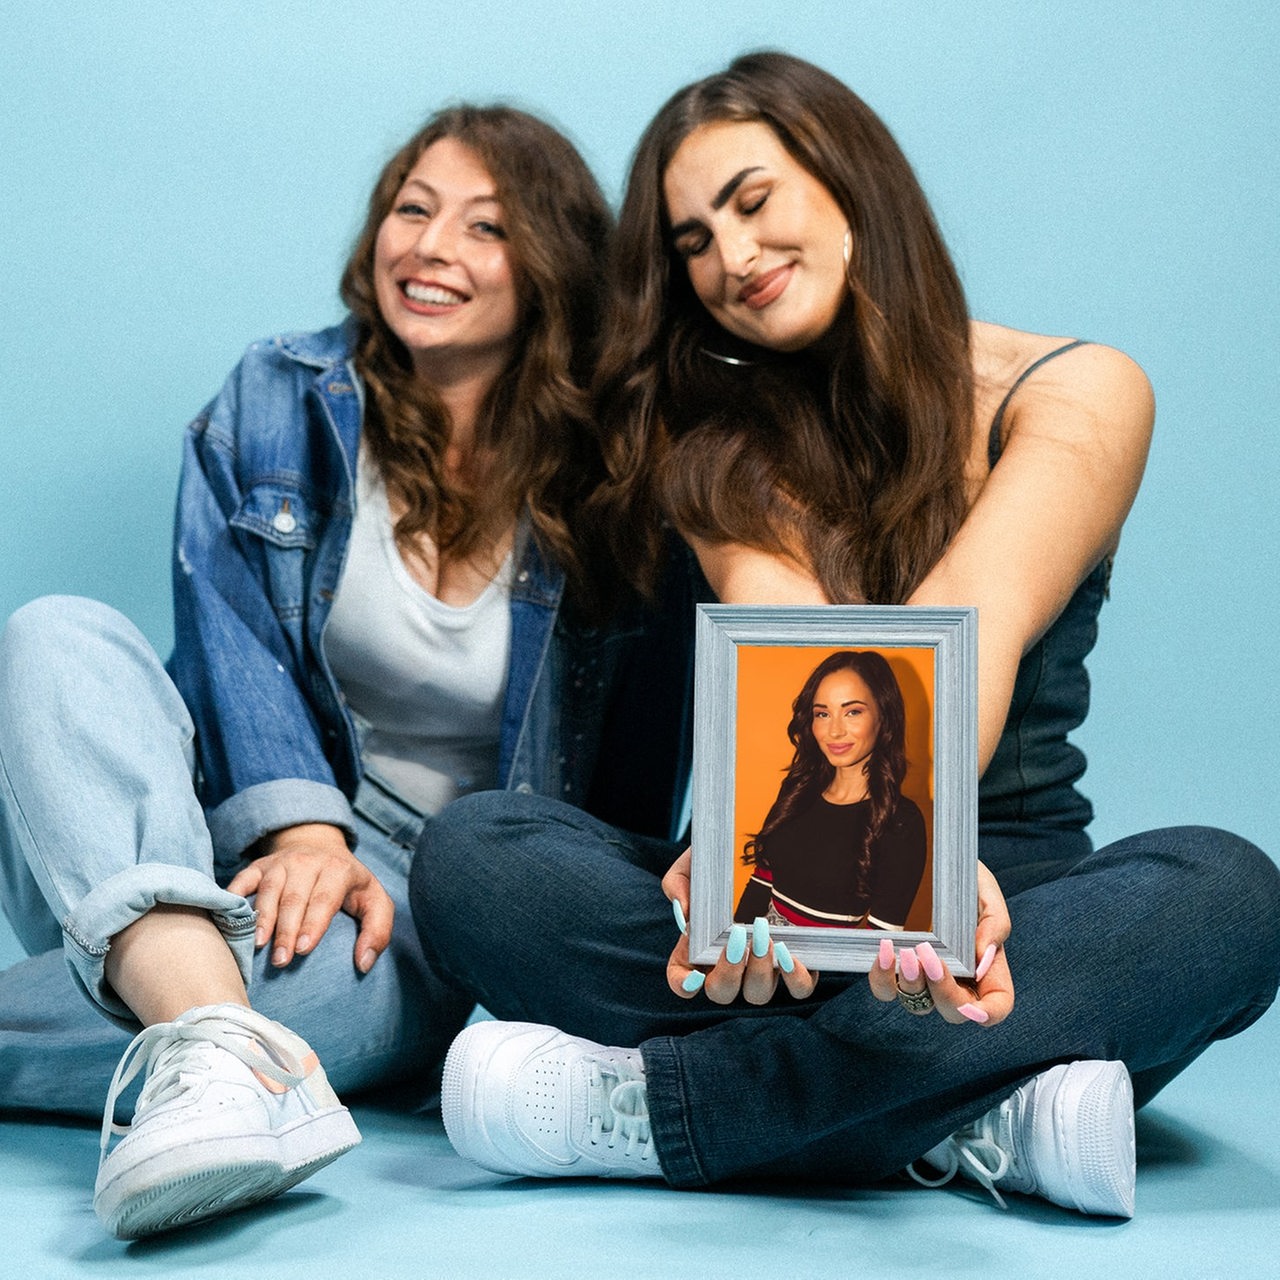 Karina und Larissa sitzen auf dem Boden und halten ein Porträt in der Hand.